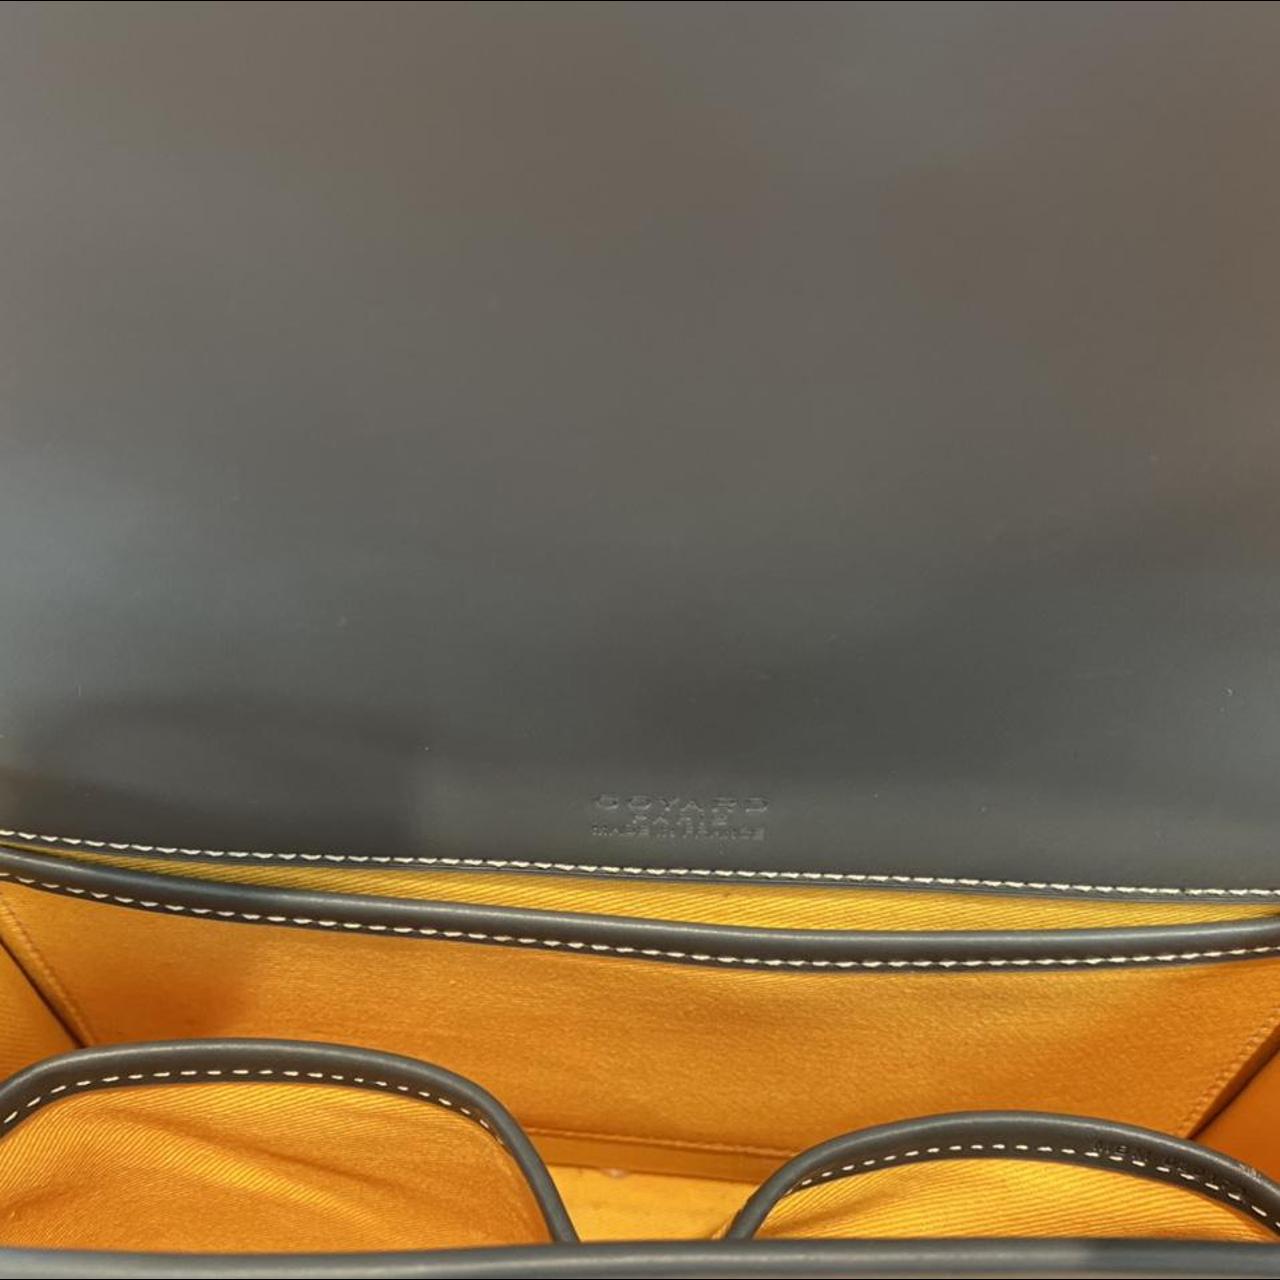 Goyard Belvedere Messenger Grey Pm Crossbody Shoulder Bag Leather Linen Set